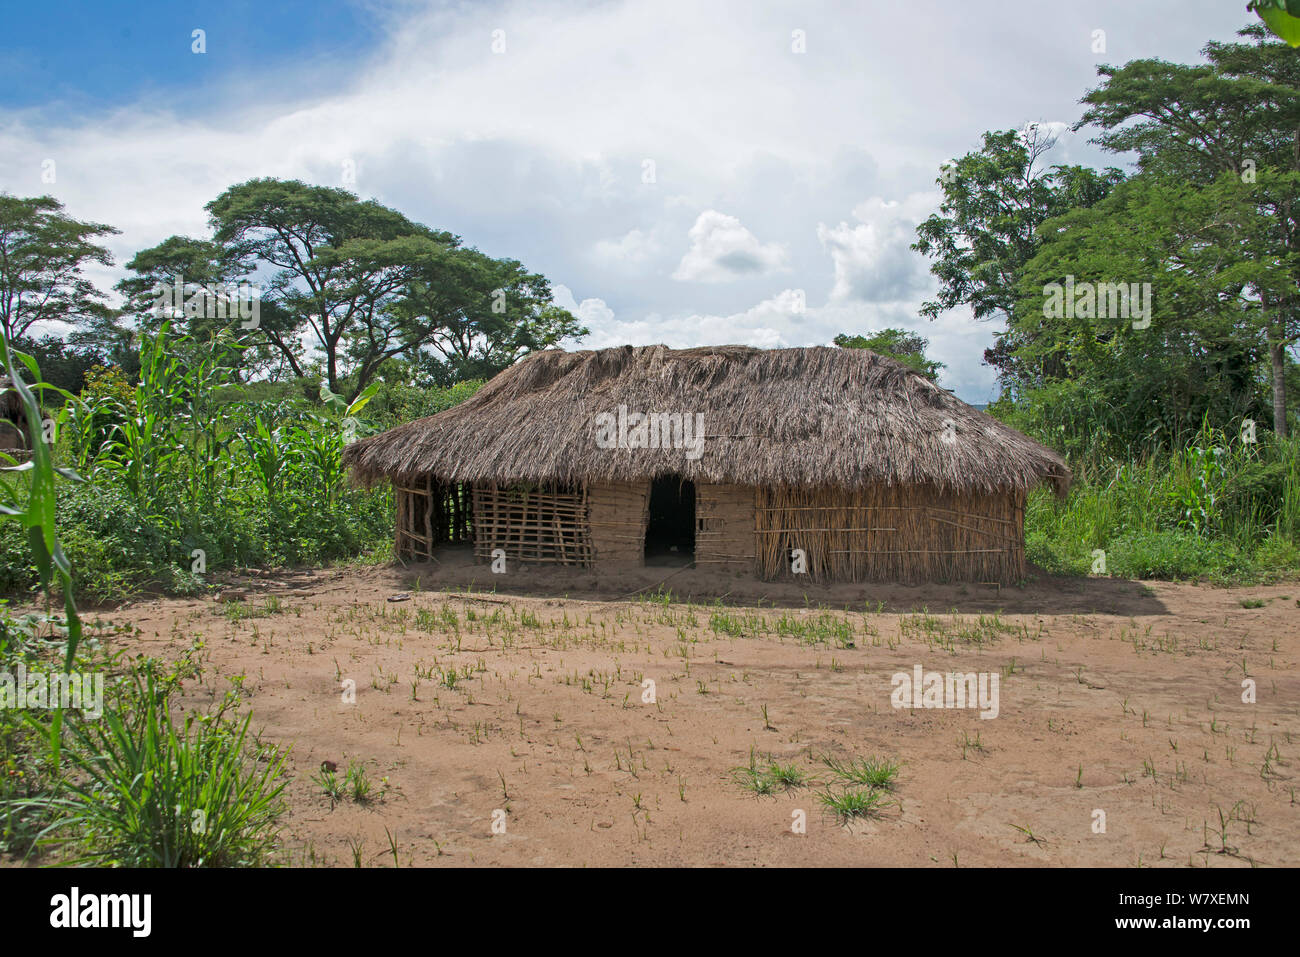 Village abandonné récemment, Katanga, République démocratique du Congo, mars 2012. Banque D'Images